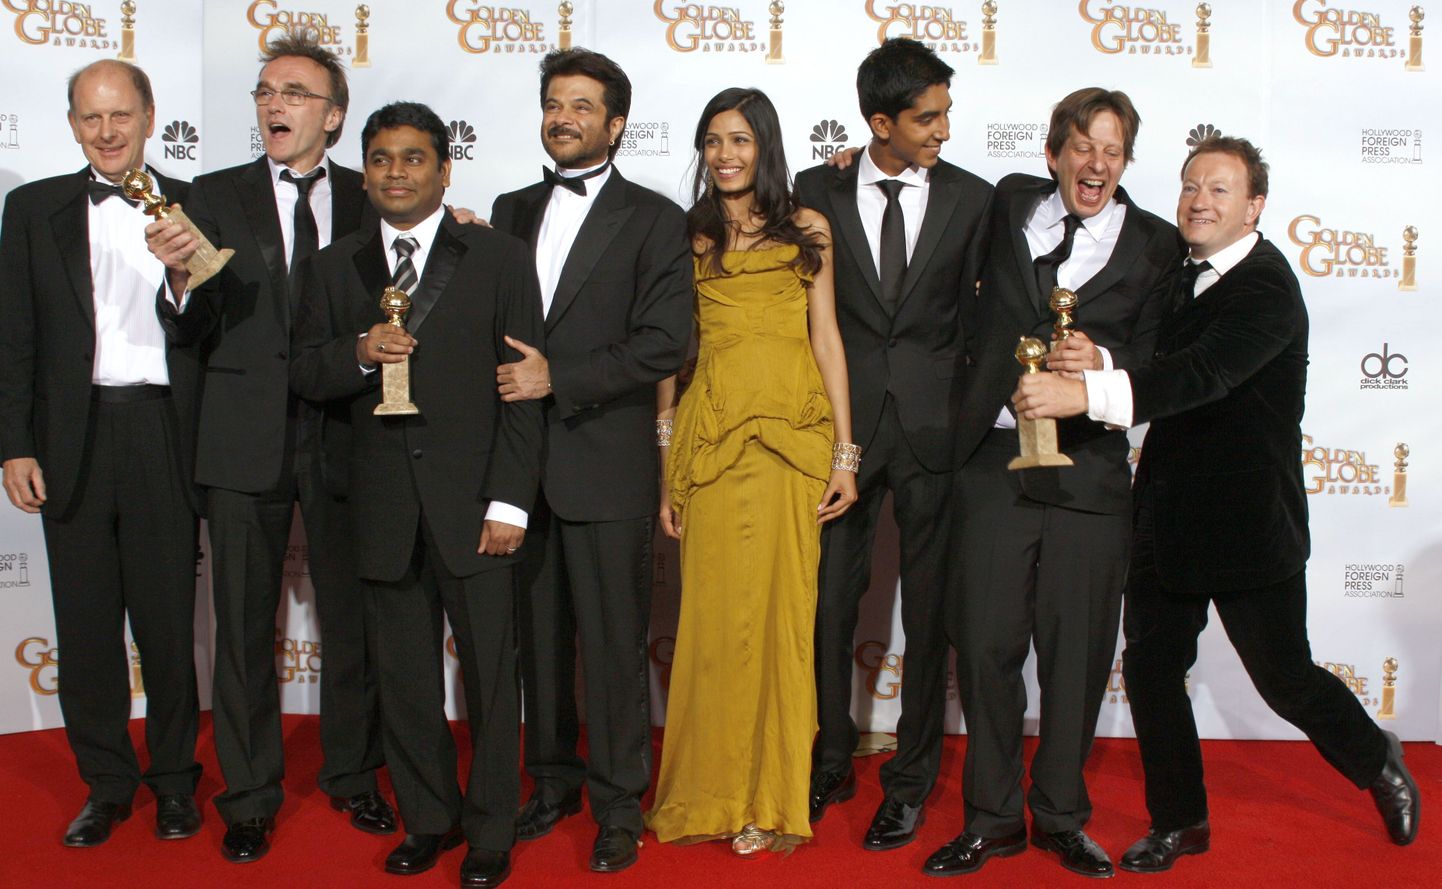 «Slumdog Millionaire» võitis neli Kuldgloobuse auhinda. Fotol selle tegijad ja näitlejad